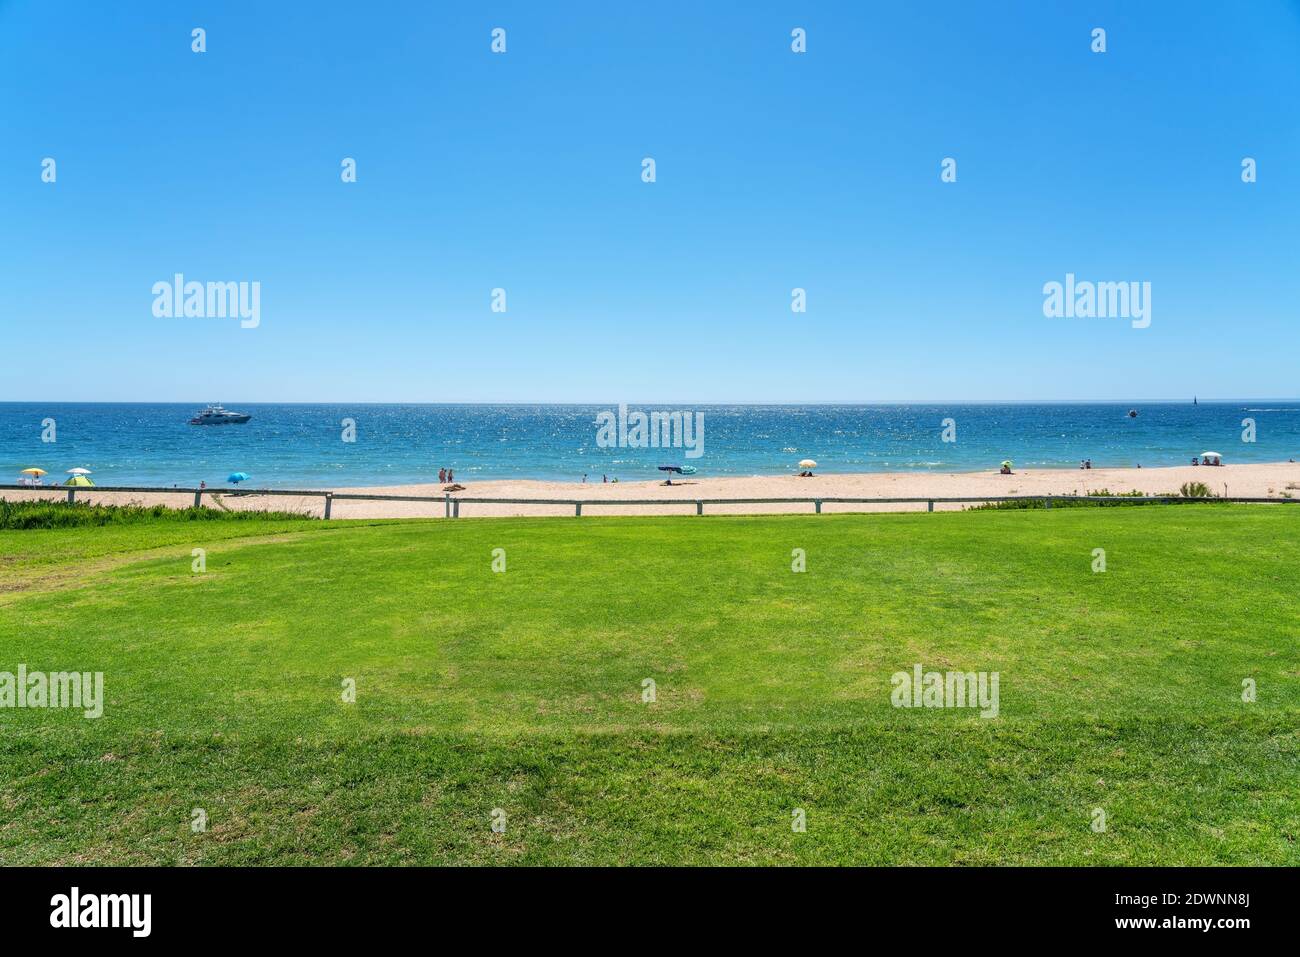 Resort spiagge di lusso, campi da golf con palme, con vista sul mare per i turisti a rilassarsi. Foto Stock